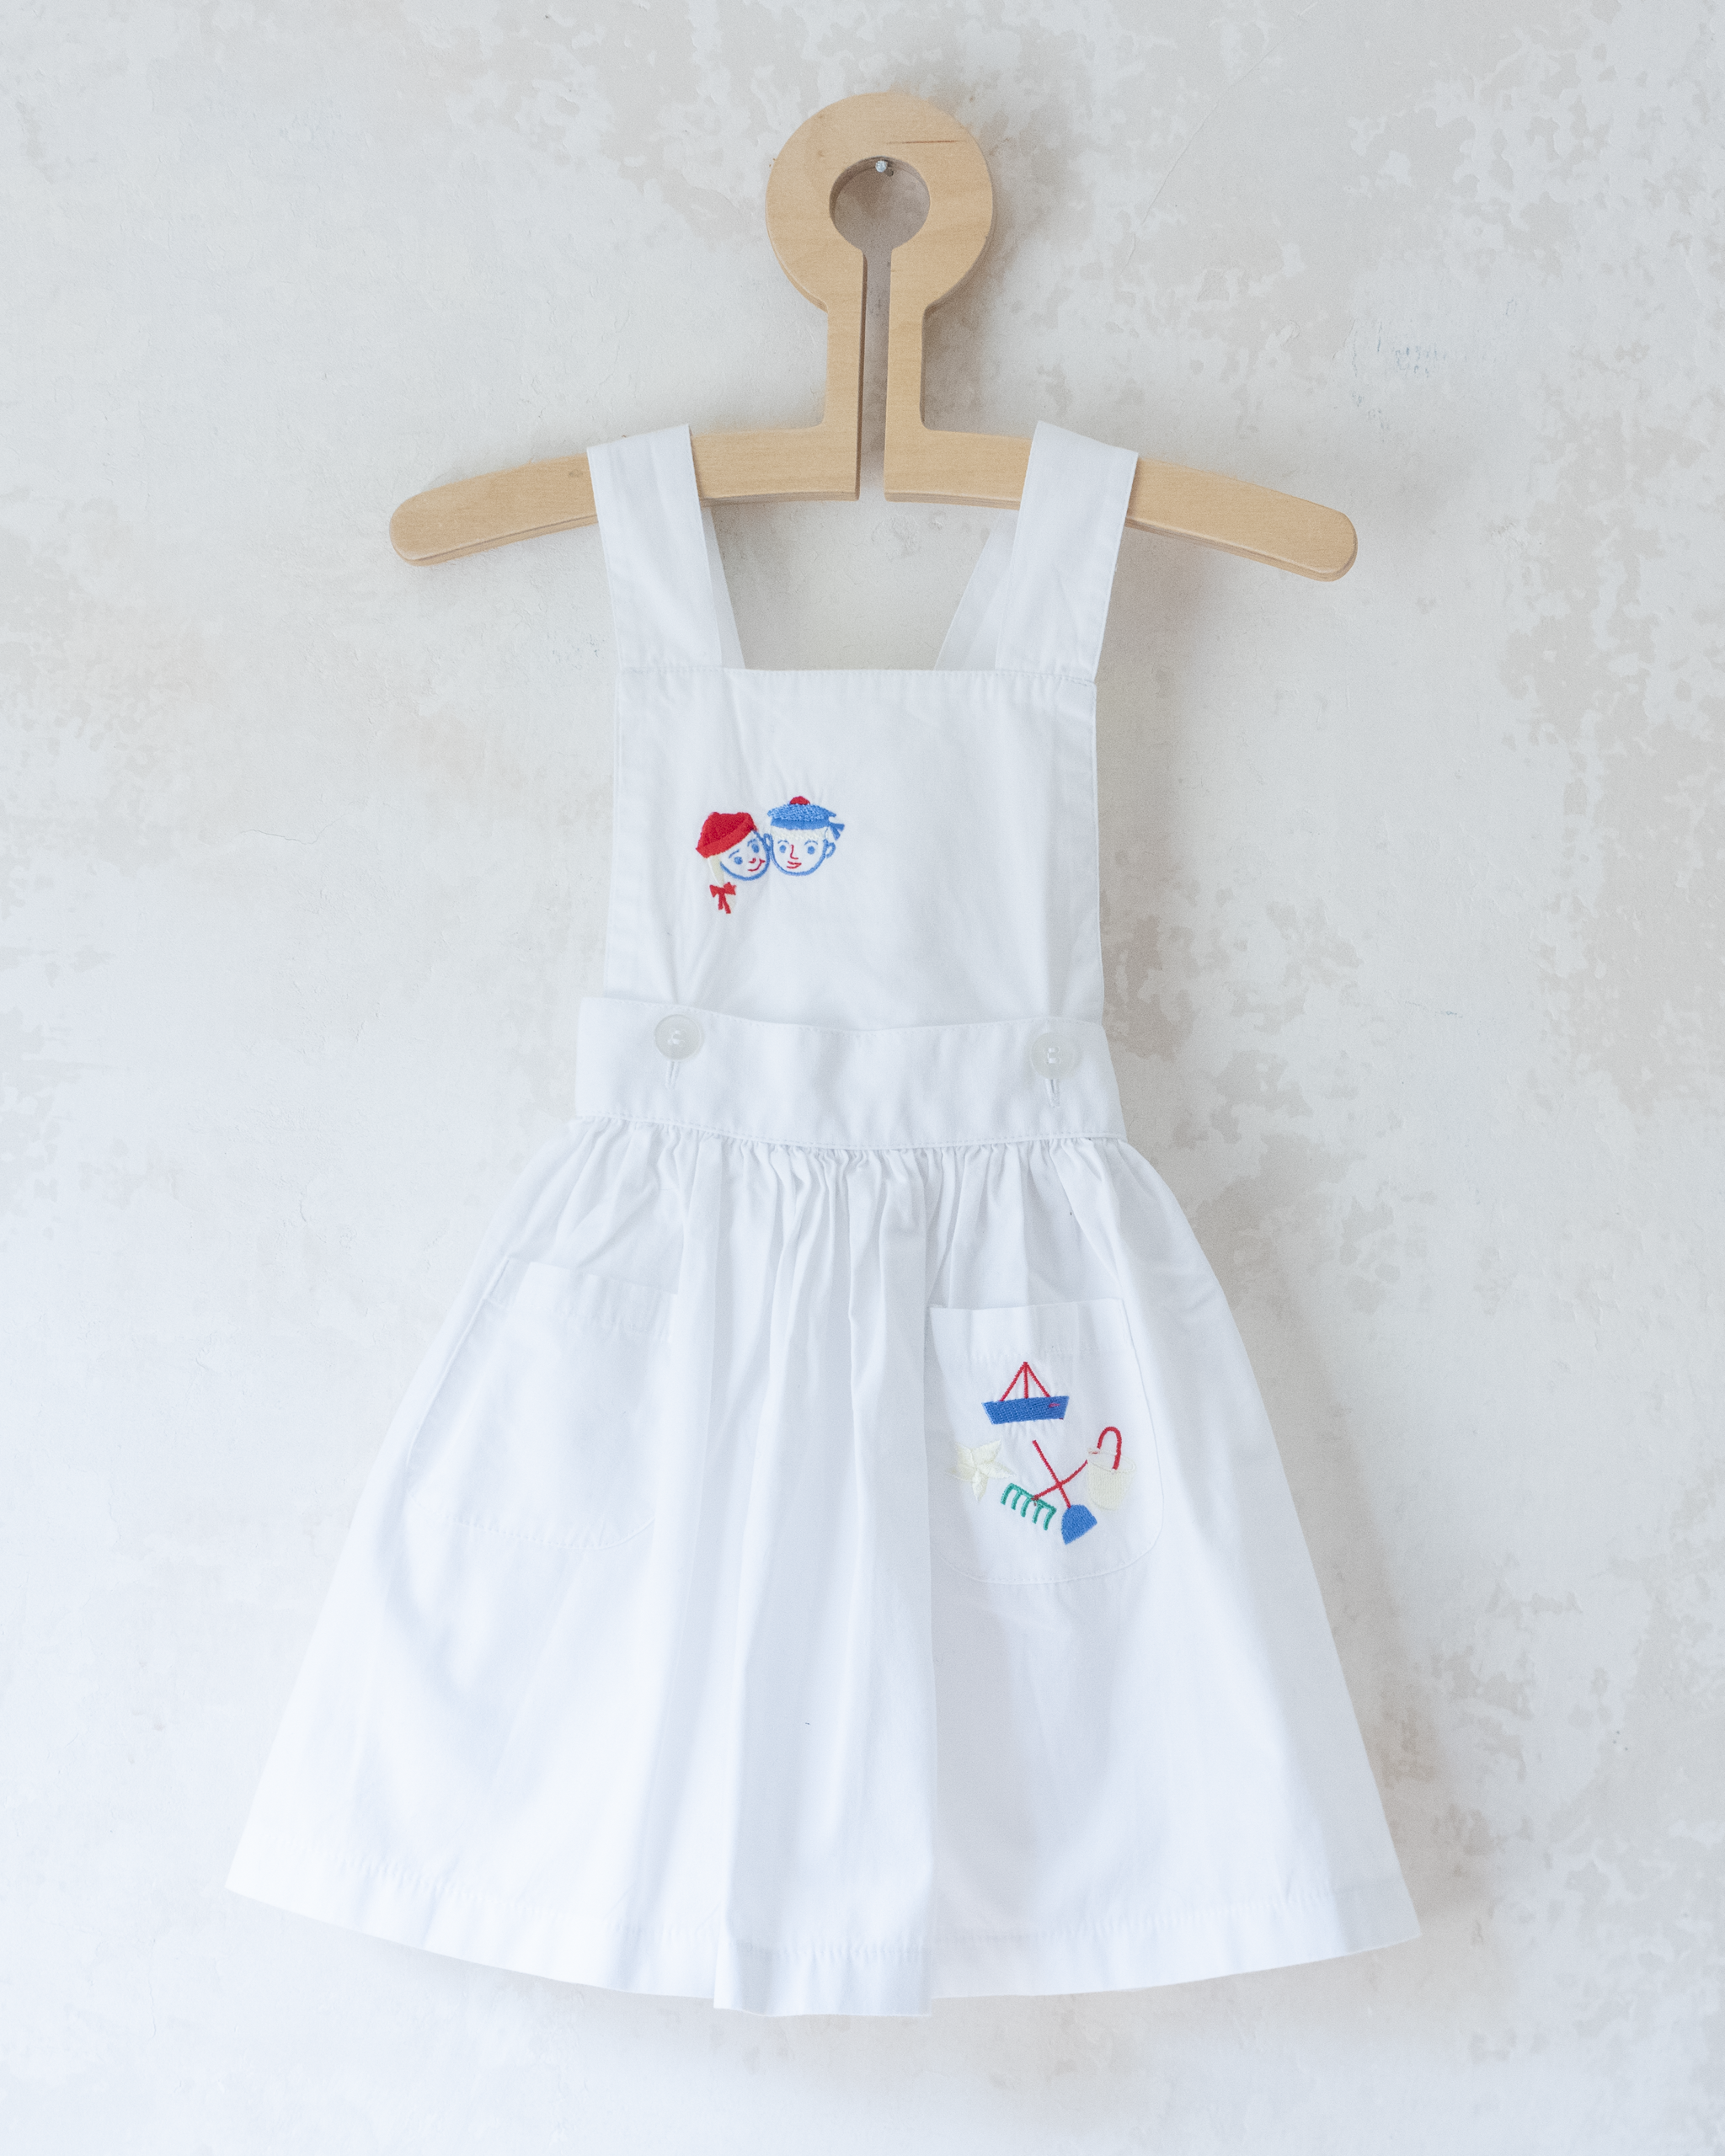 שמלה לבנה עם רקמות קיץ צבעוניות | 18-24 חודשים